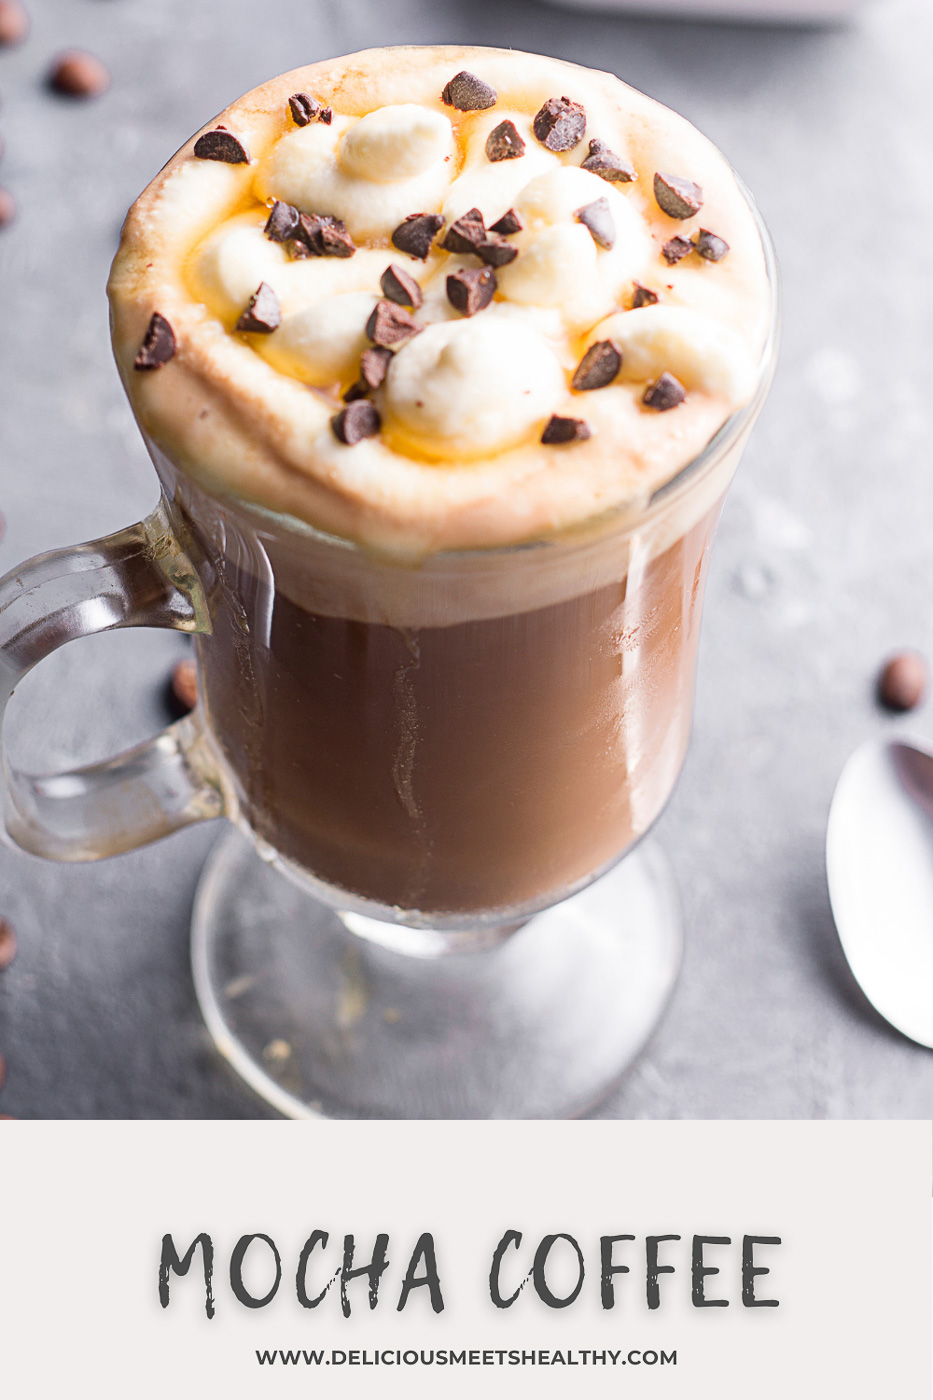 Easy Mocha Coffee at Home - Delicious Meets Healthy